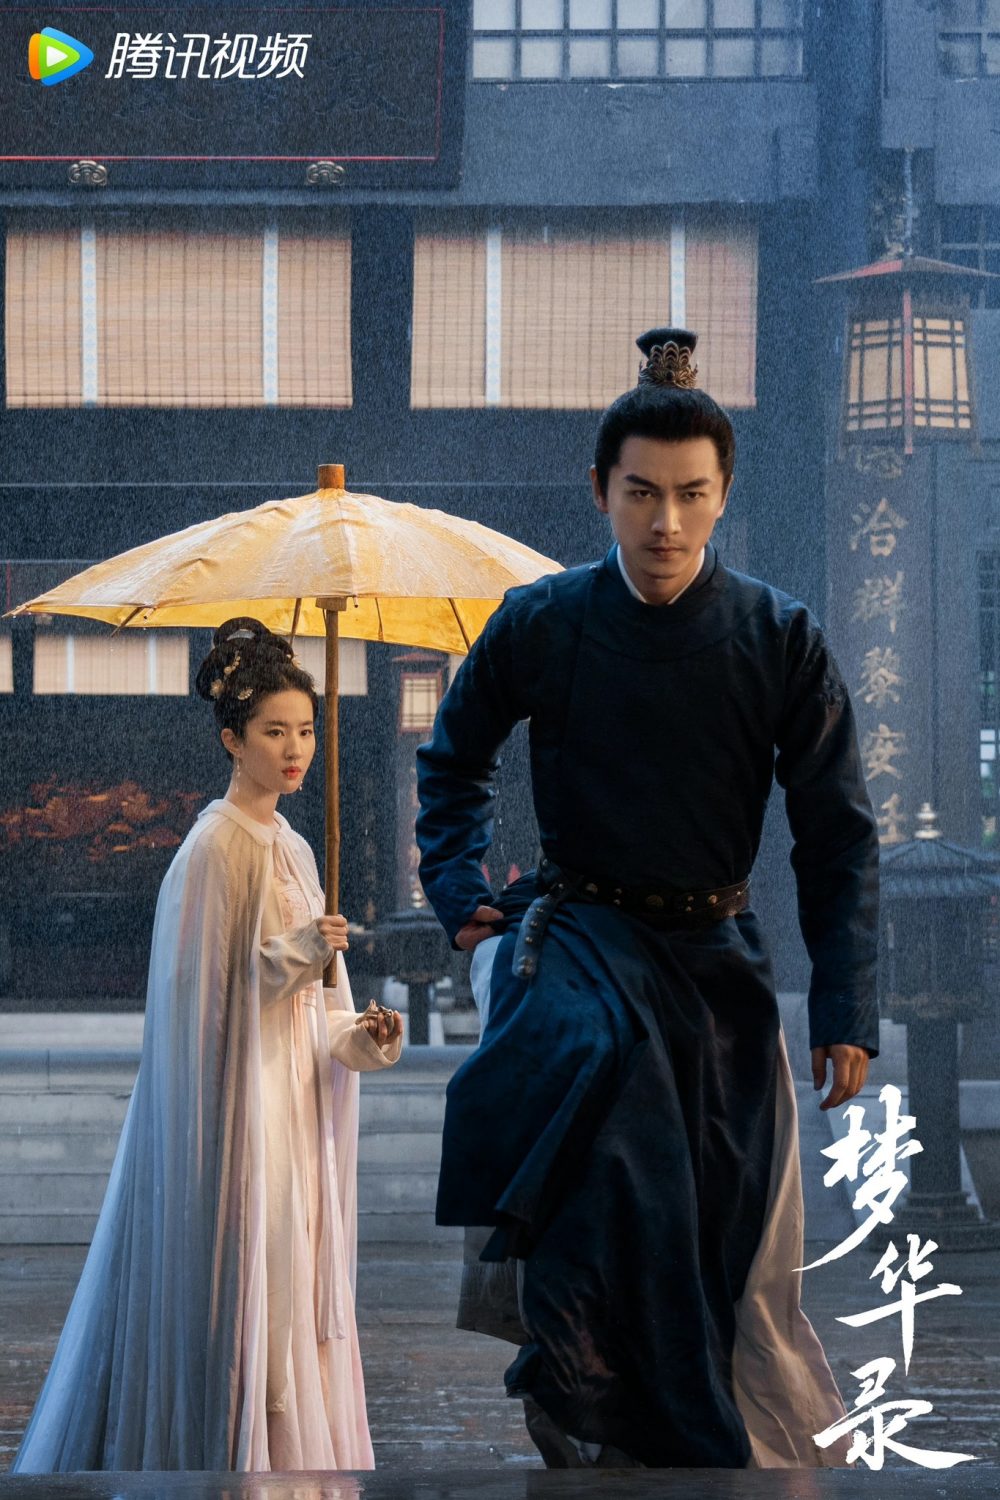 Phim mới nhất của Lưu Diệc Phi: Mộng hoa lục - A Dream of Splendor (2022) 